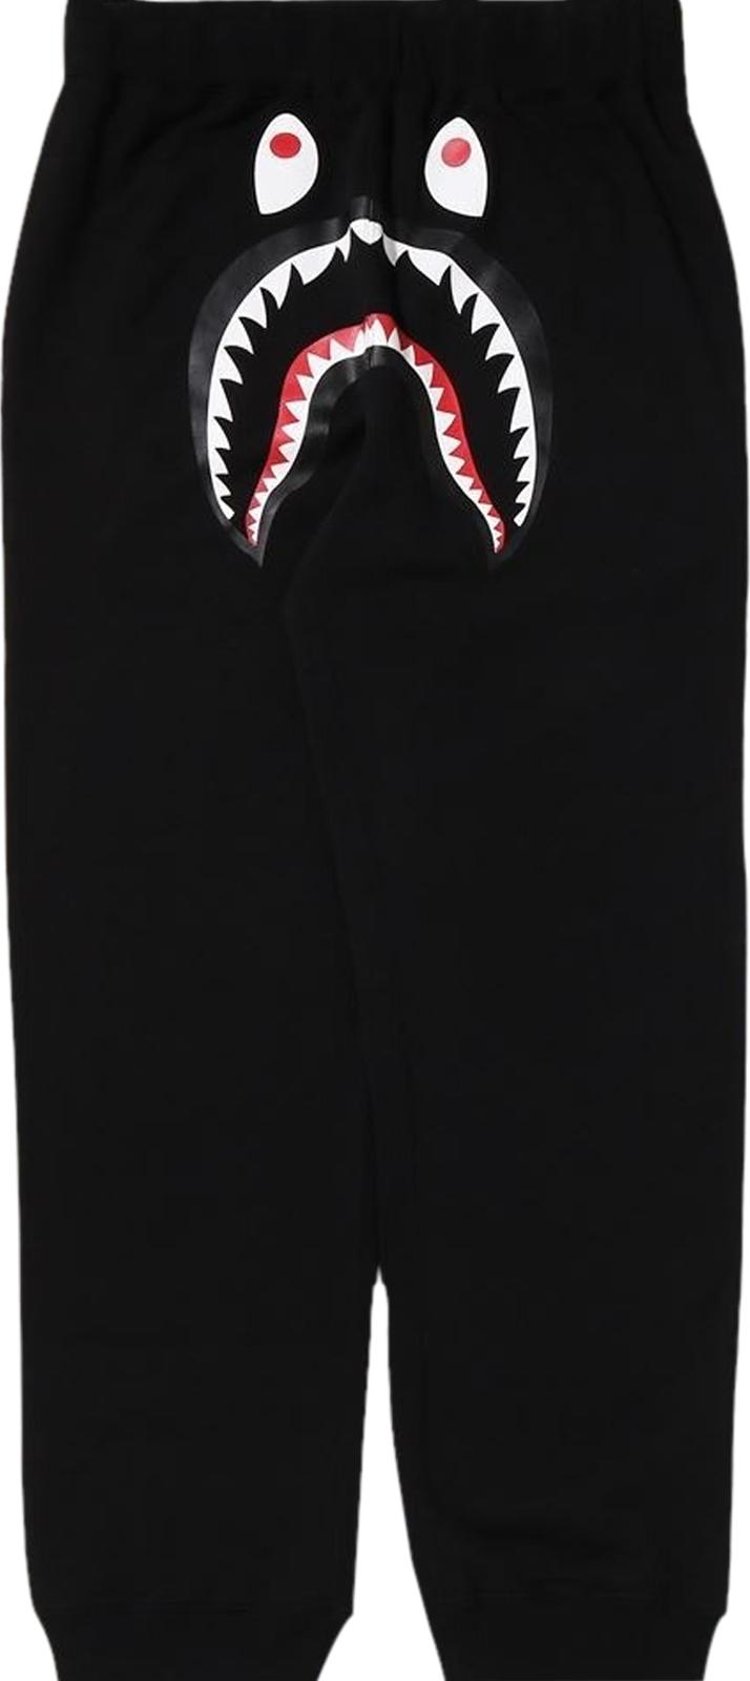 Buy BAPE Shark Sweat Pants 'Black' - 1I70 152 001 BLACK